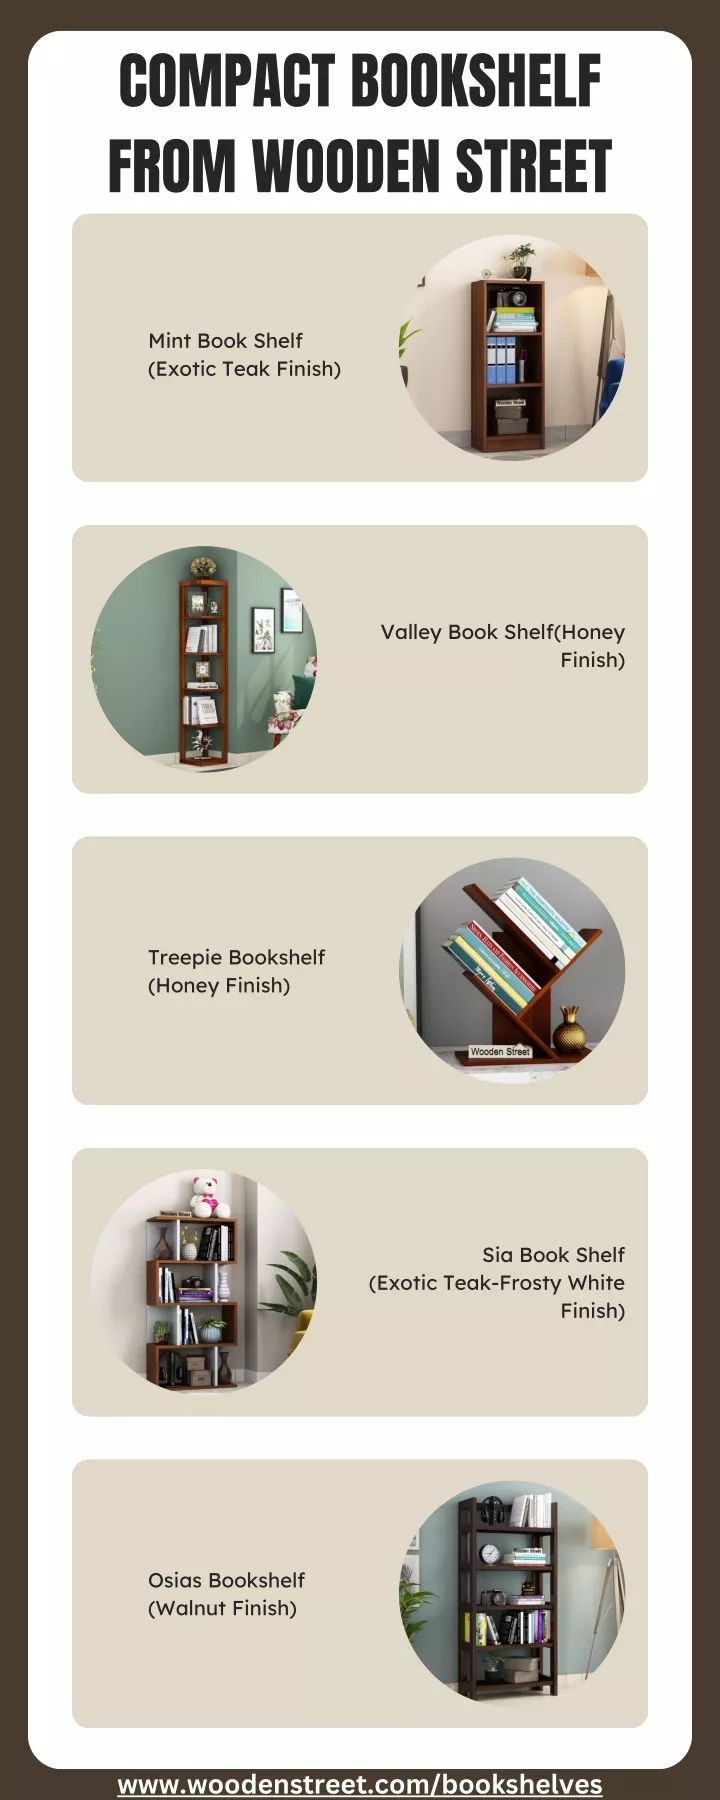 compact bookshelf from wooden street